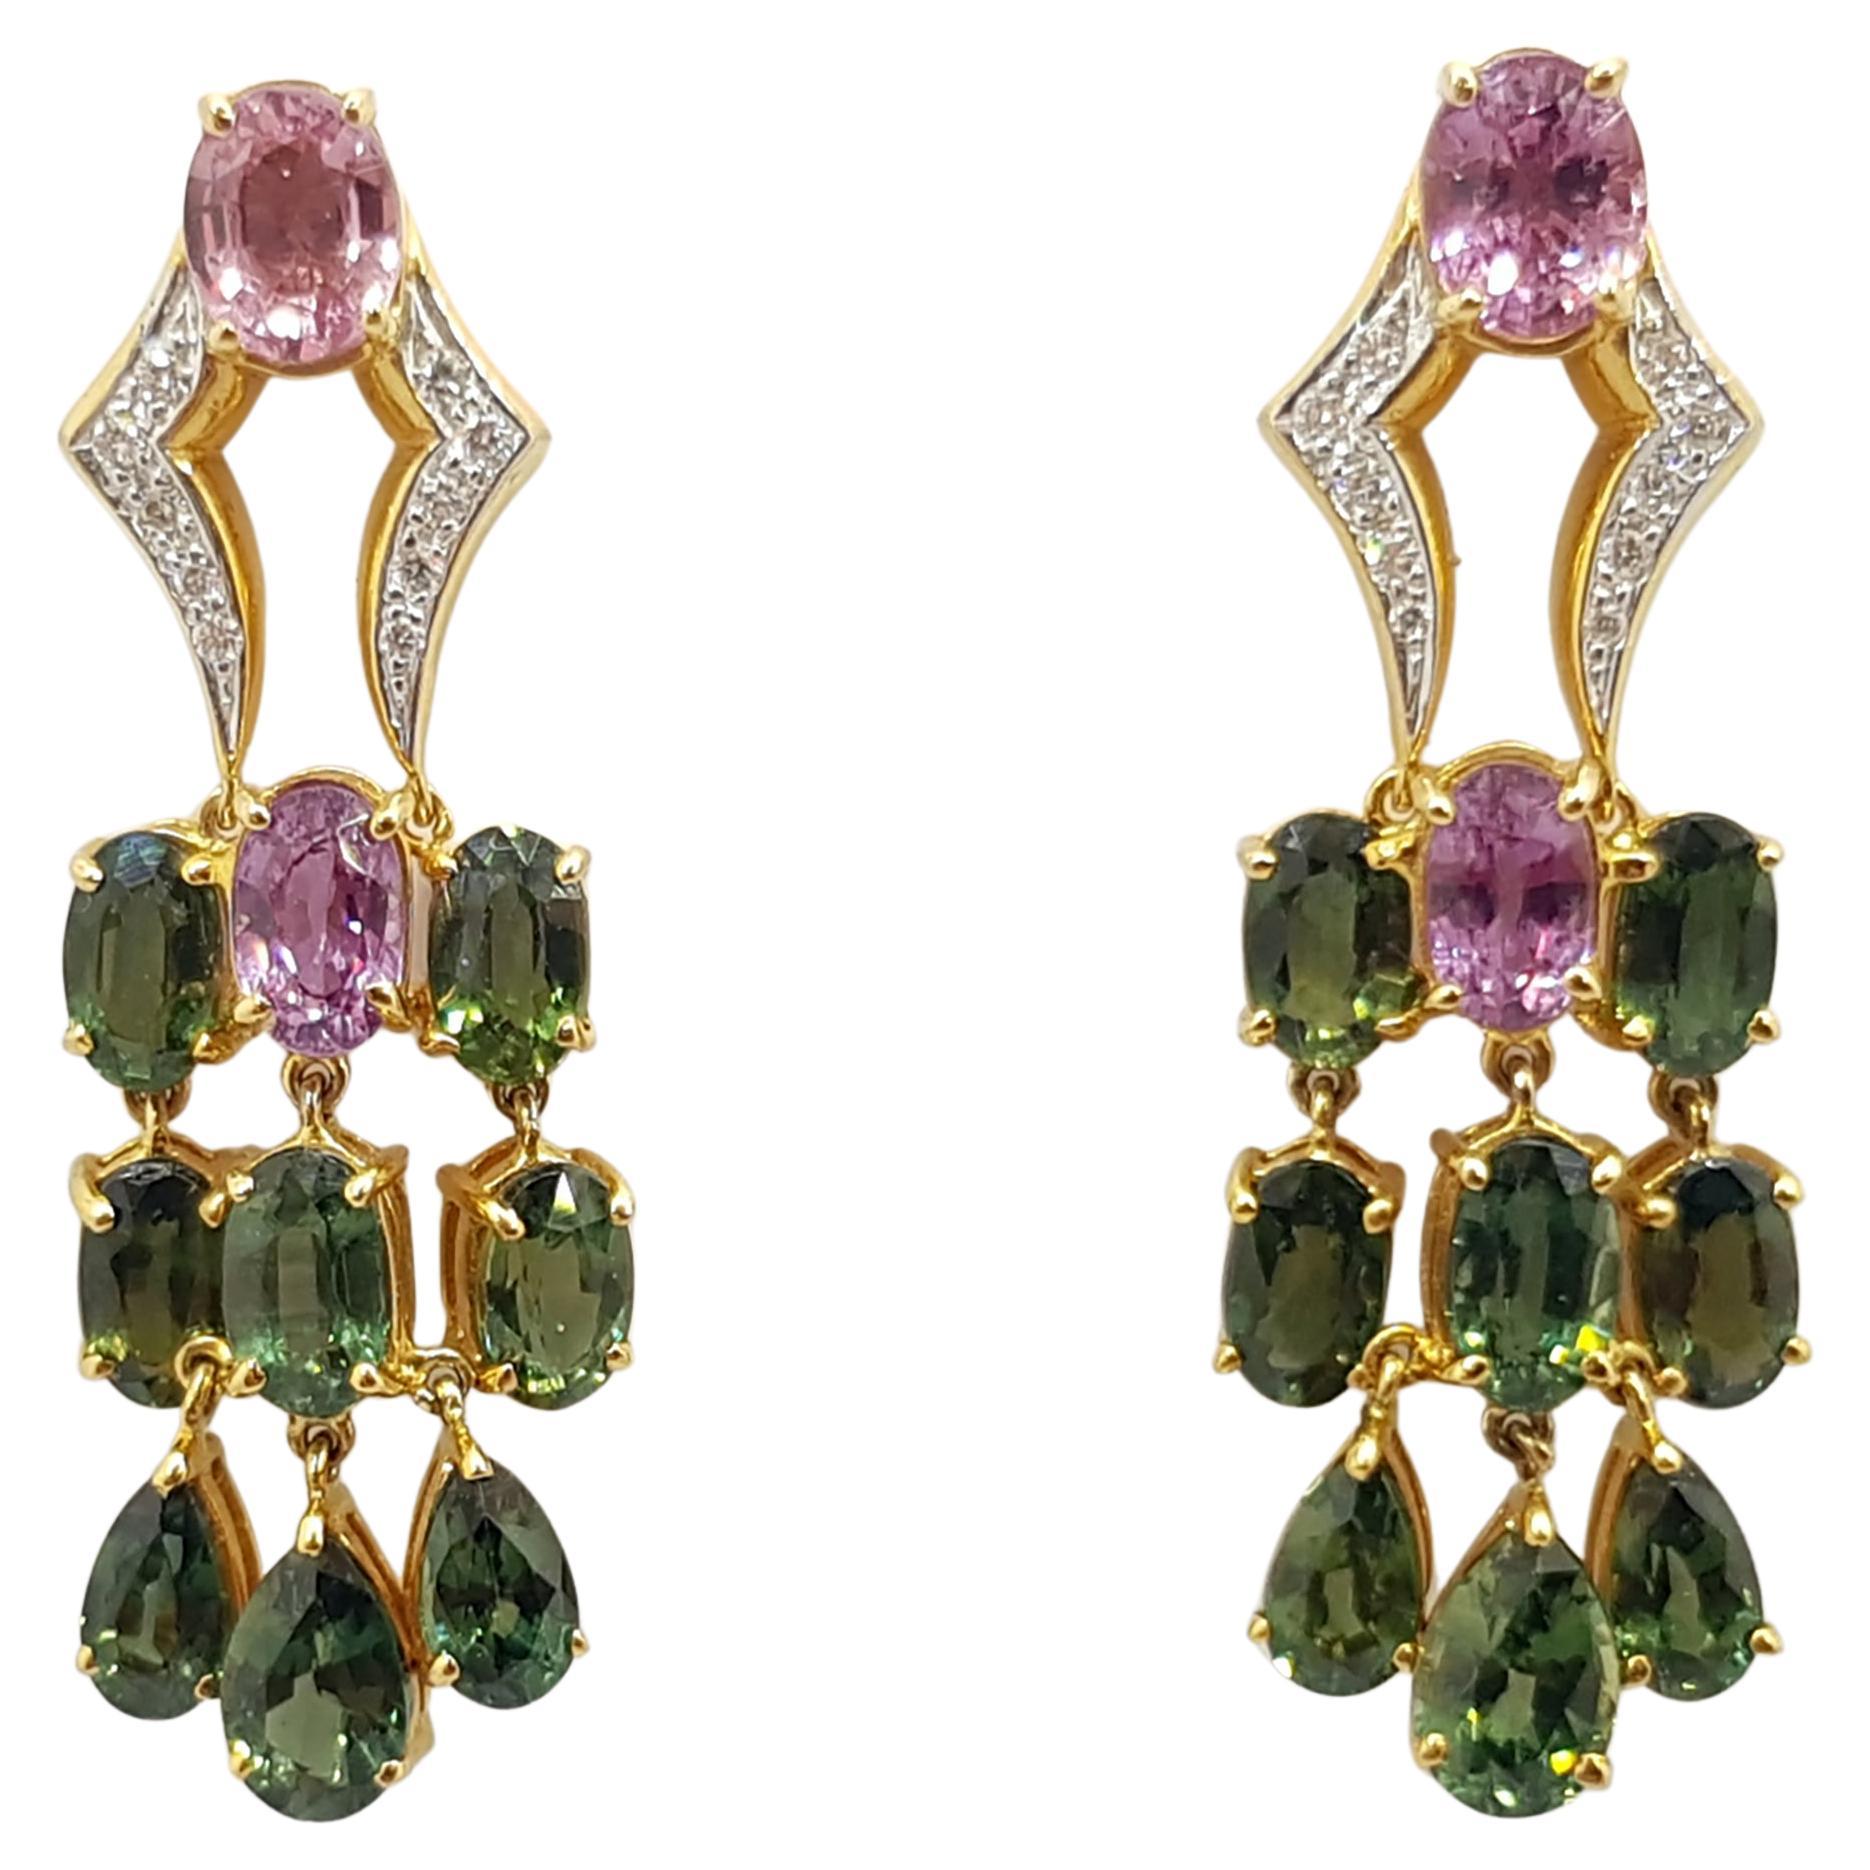 Ohrringe mit grünem Saphir, rosa Saphir und Diamant in 18 Karat Goldfassung